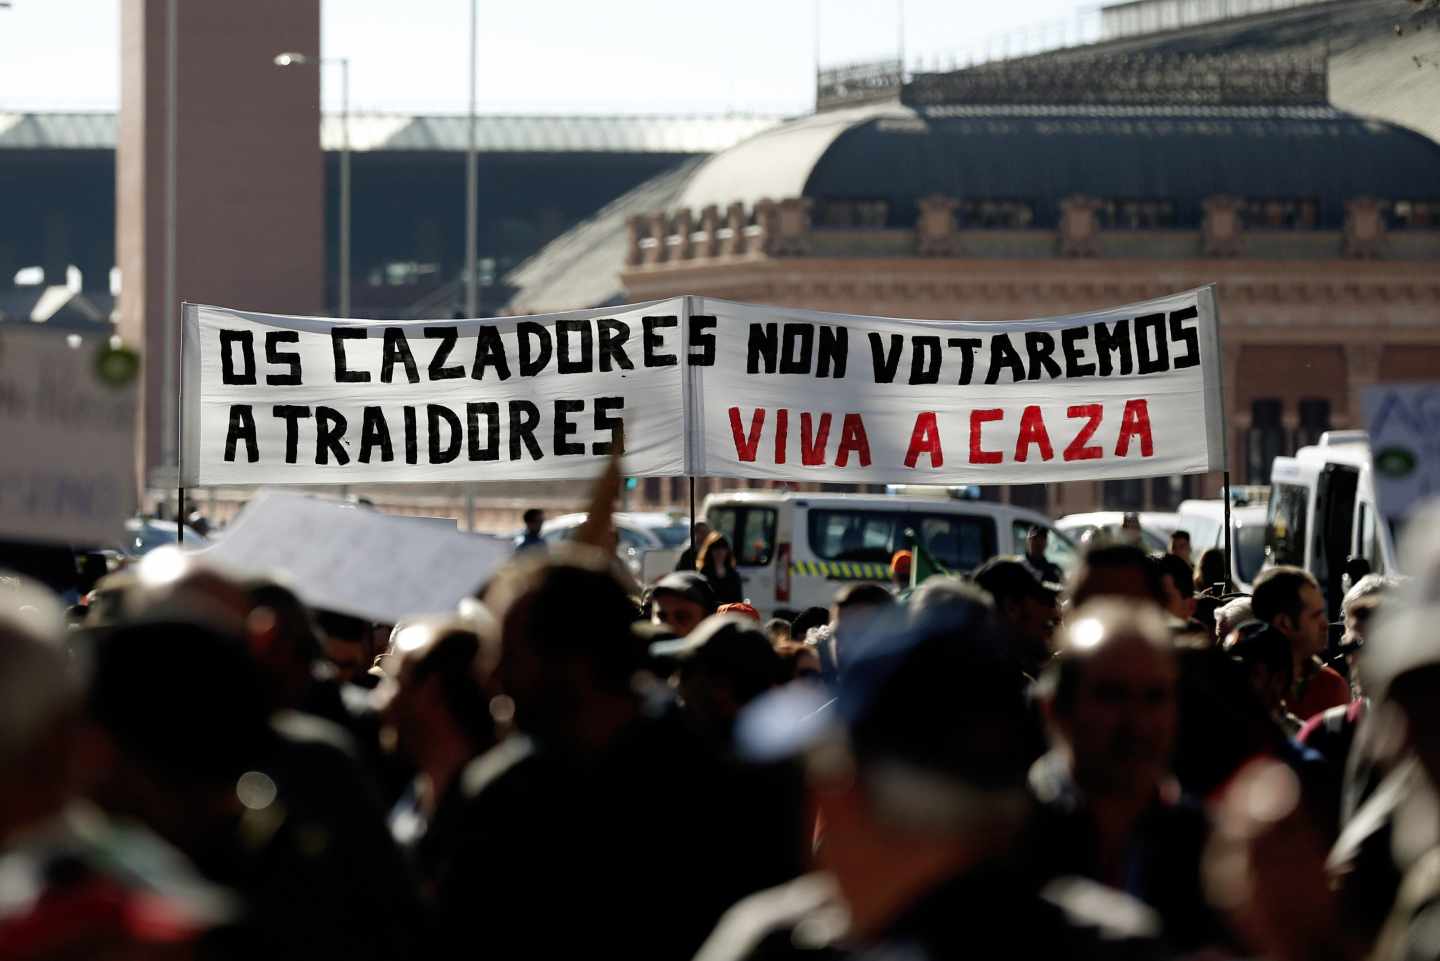 Manifestación del mundo rural en Madrid: "Los cazadores no votaremos a traidores"